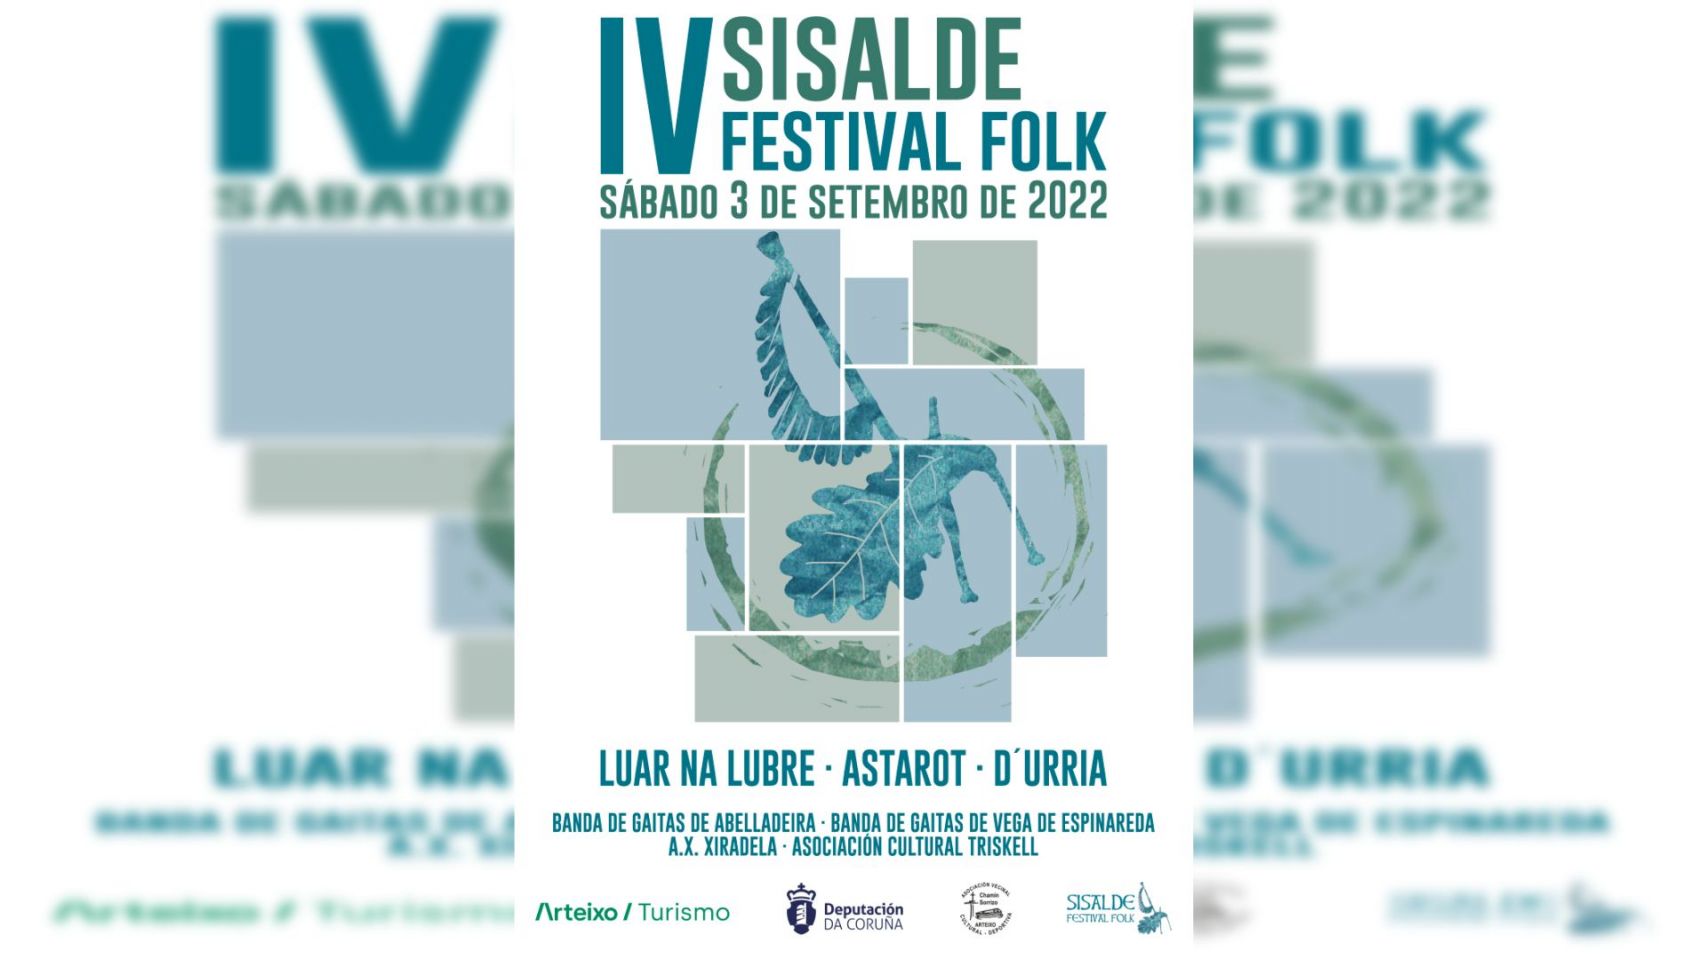 Nueva edición del Festival Folk de Sisalde.